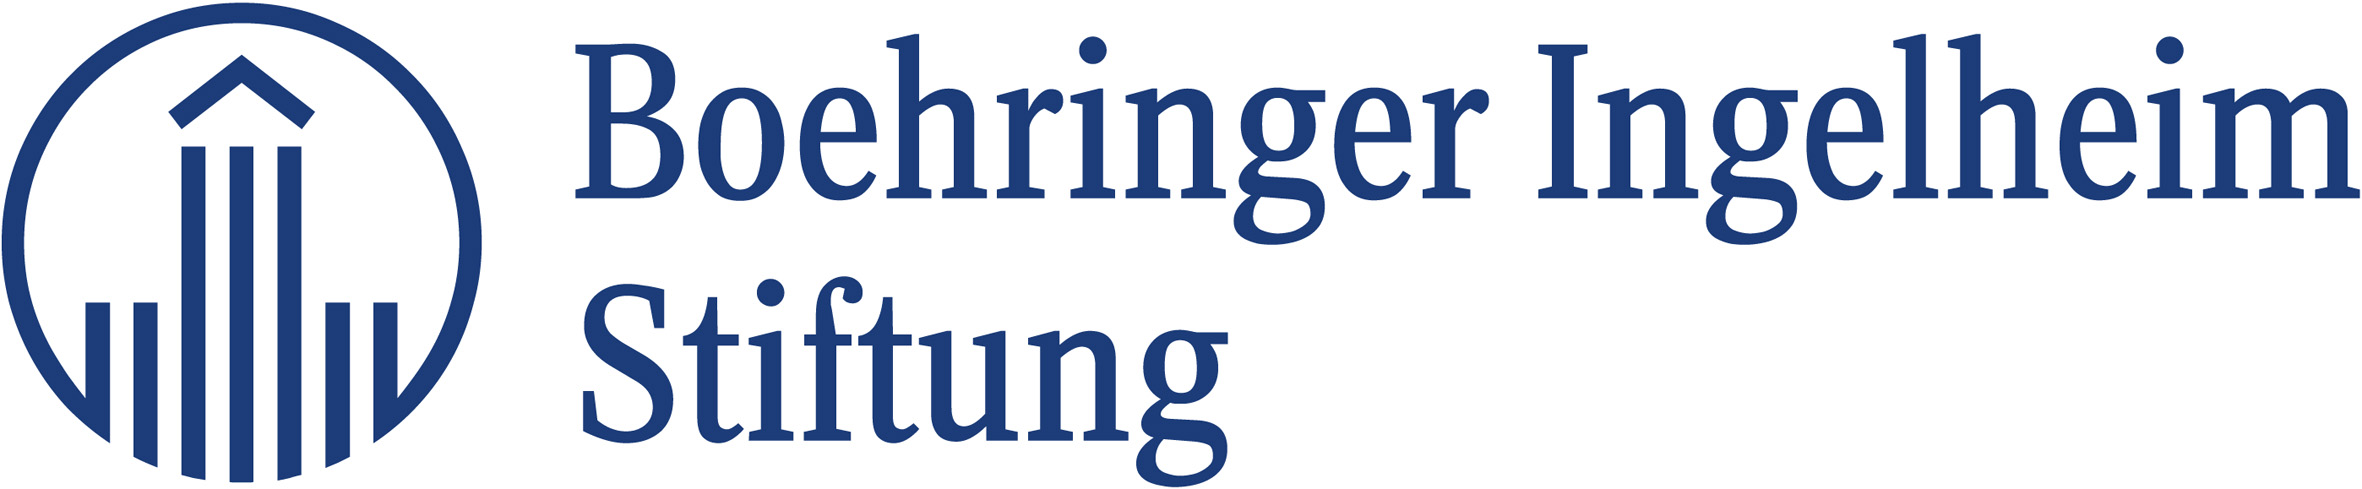 2019-02/bi-stiftung-logo,-blau,-rgb-300-dpi-websites.jpg